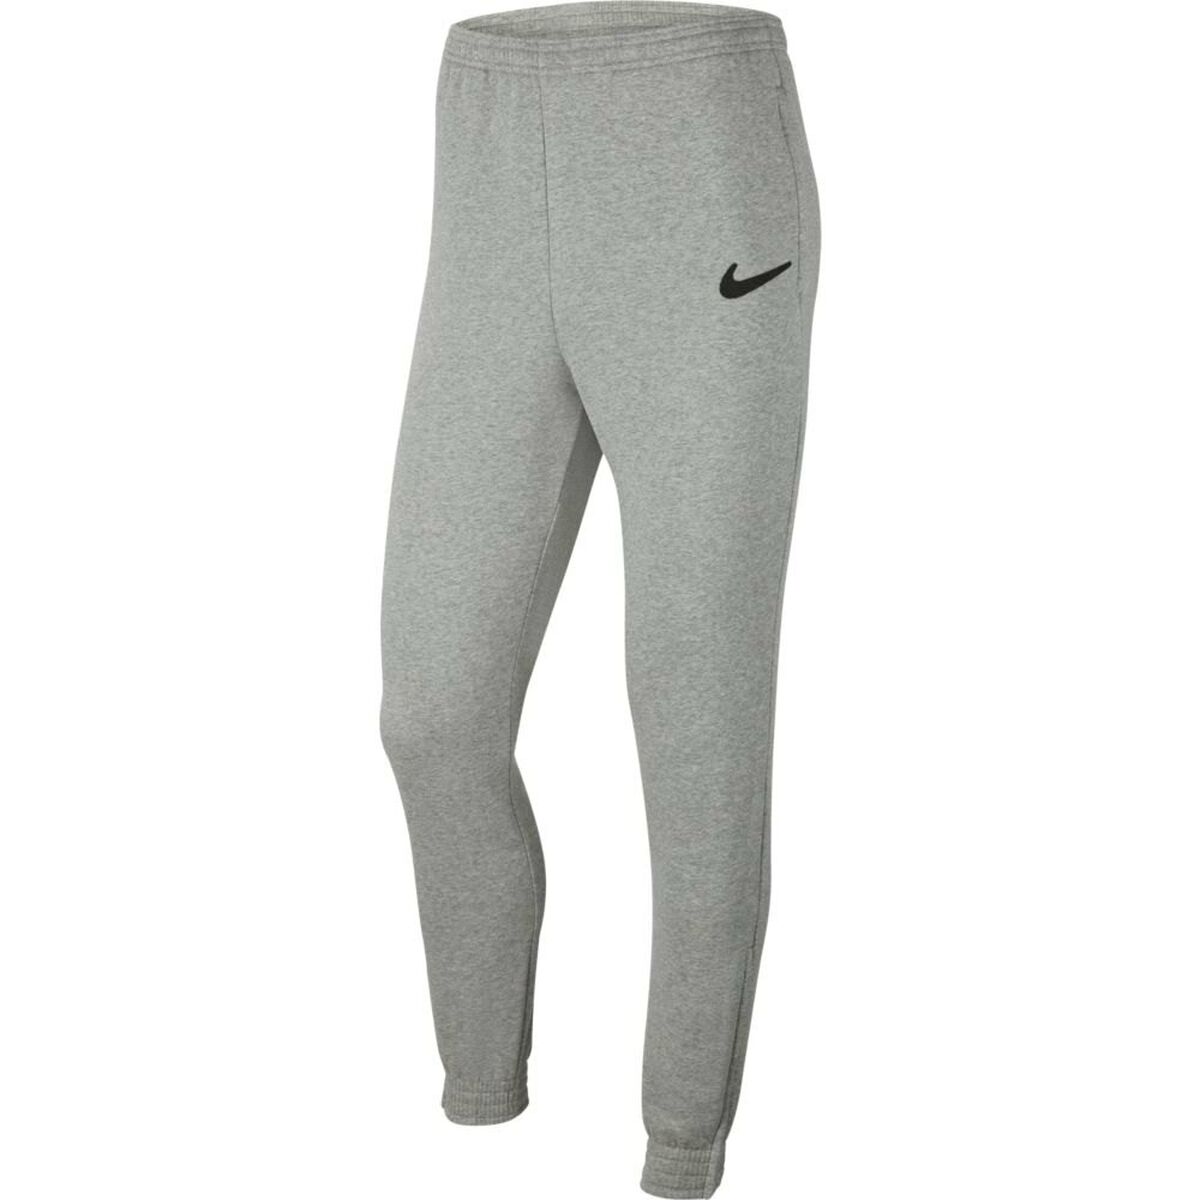 Pantalone per Adulti  PARK 20 TEAM Nike CW6907 063  Grigio Uomo